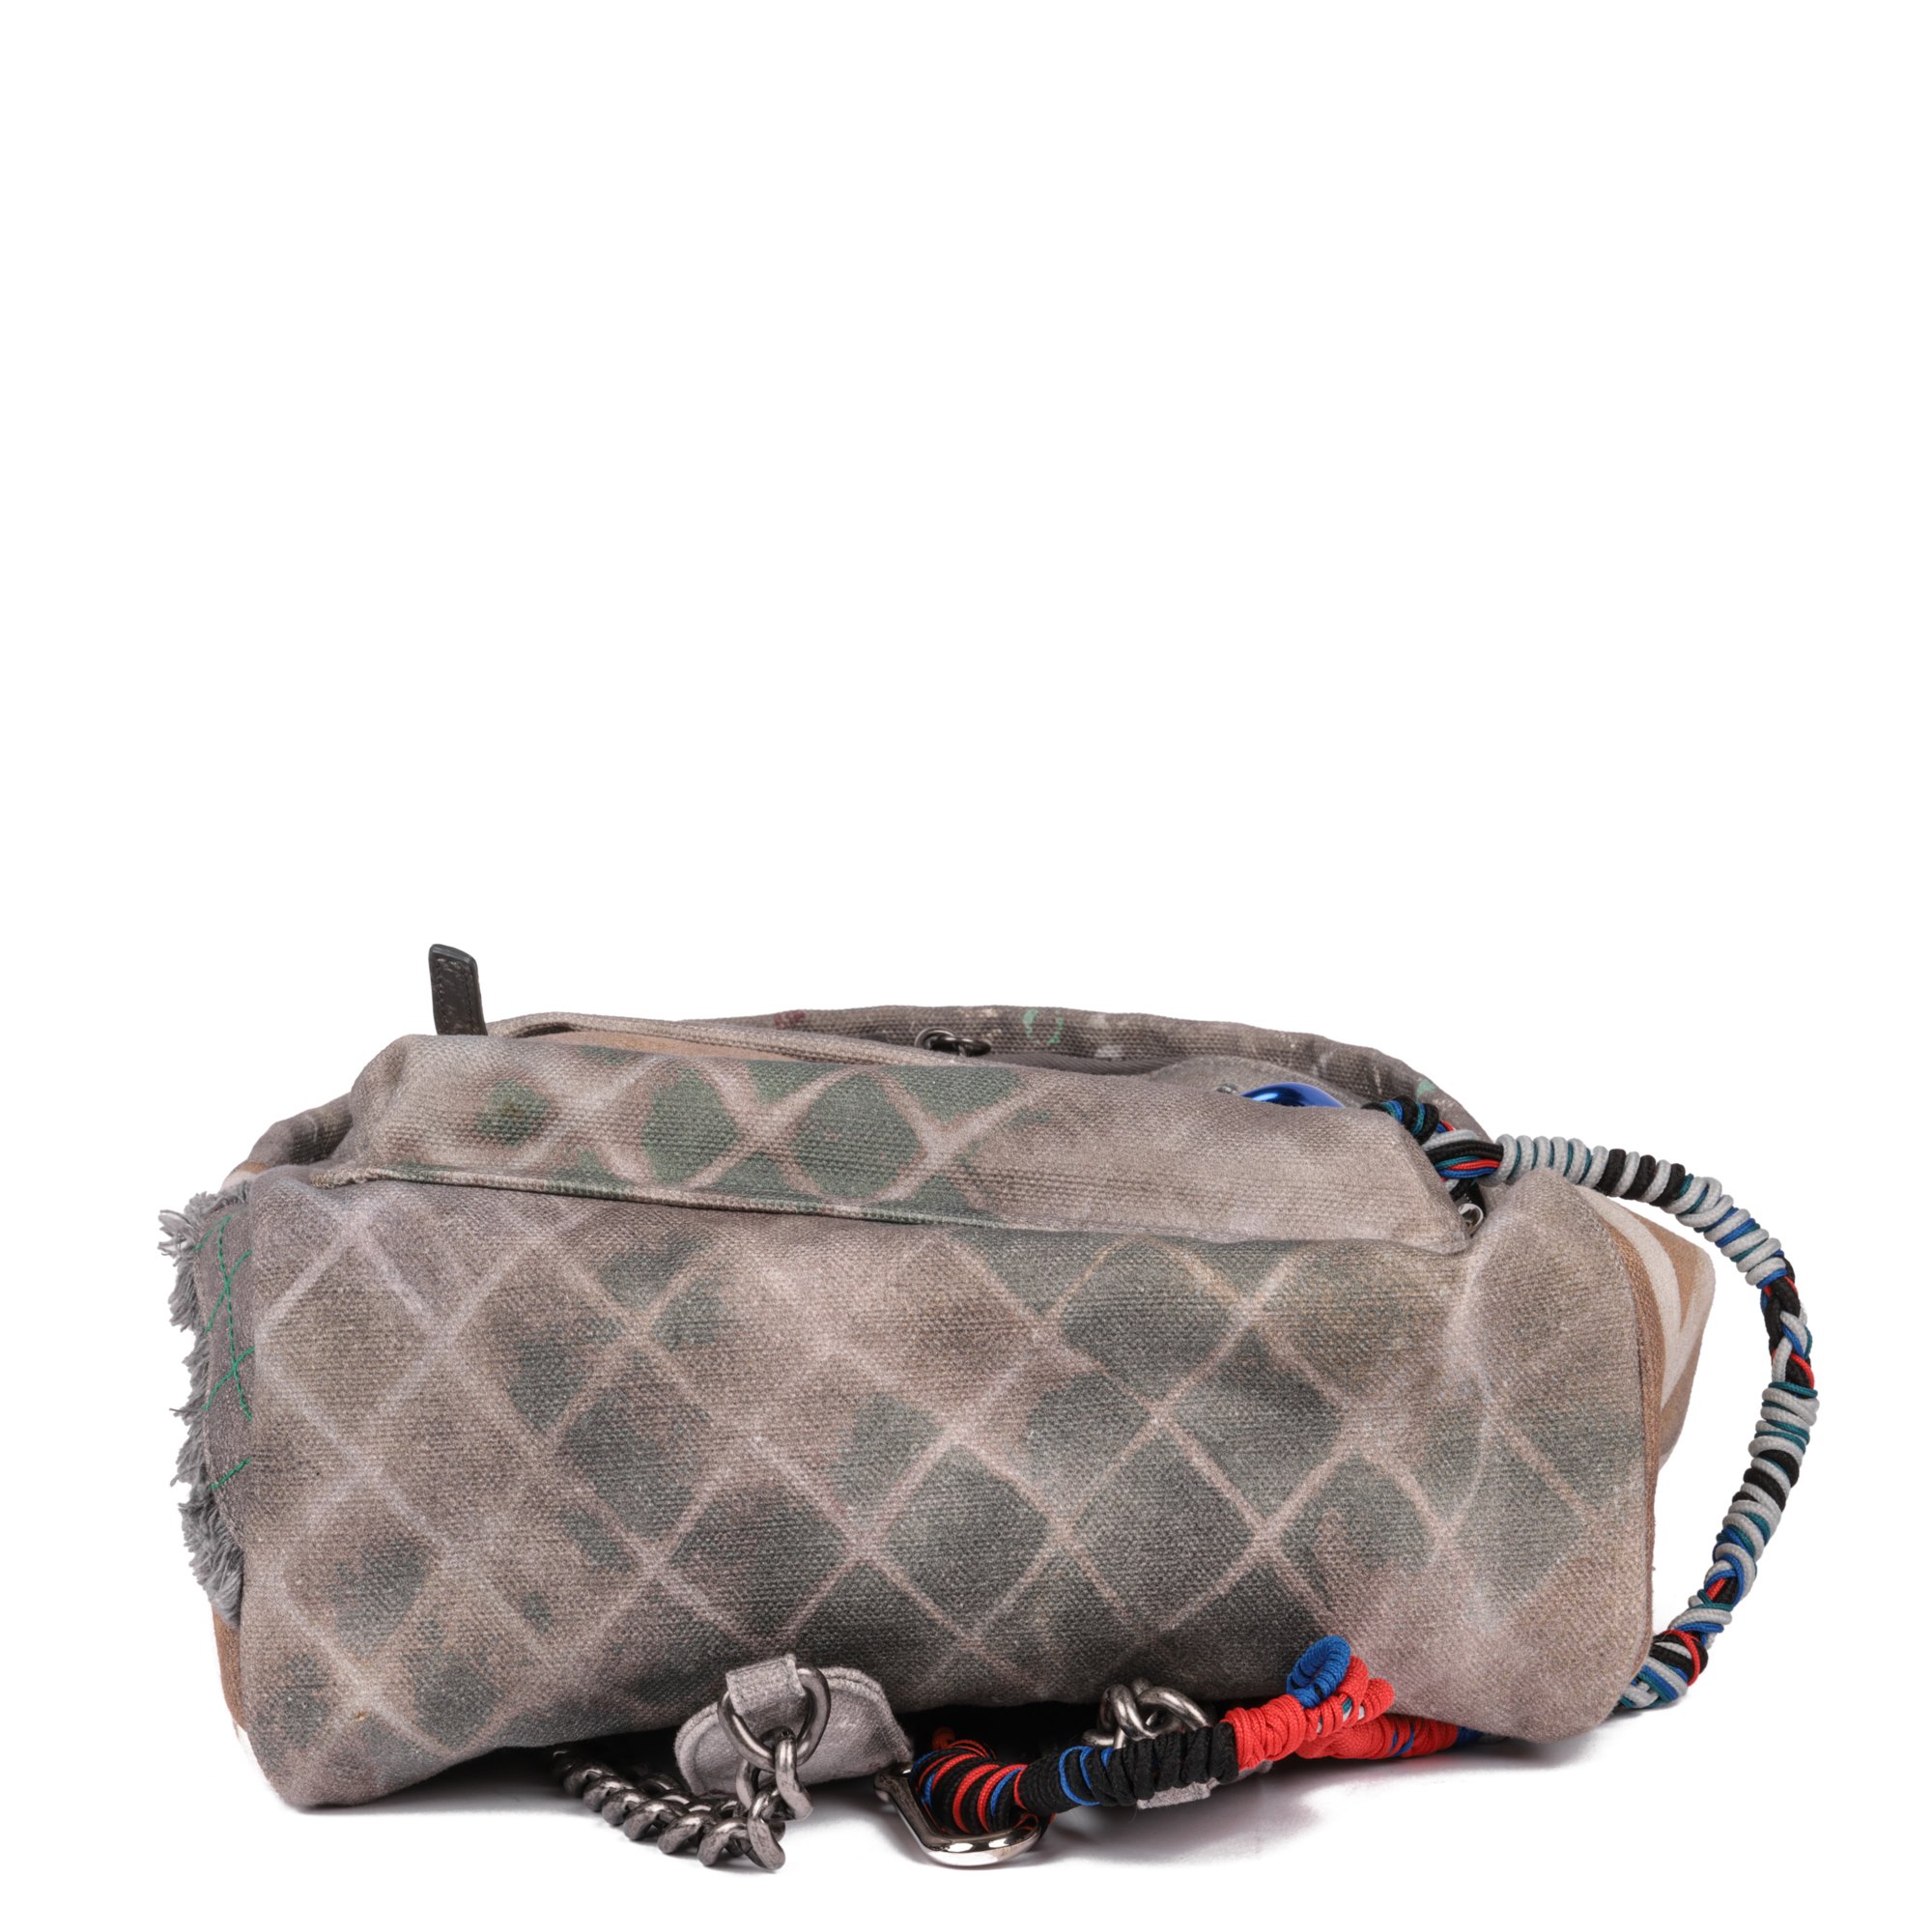 Chanel Medium Graffiti Backpack 2014 JJLG112 | Second Hand Handbags